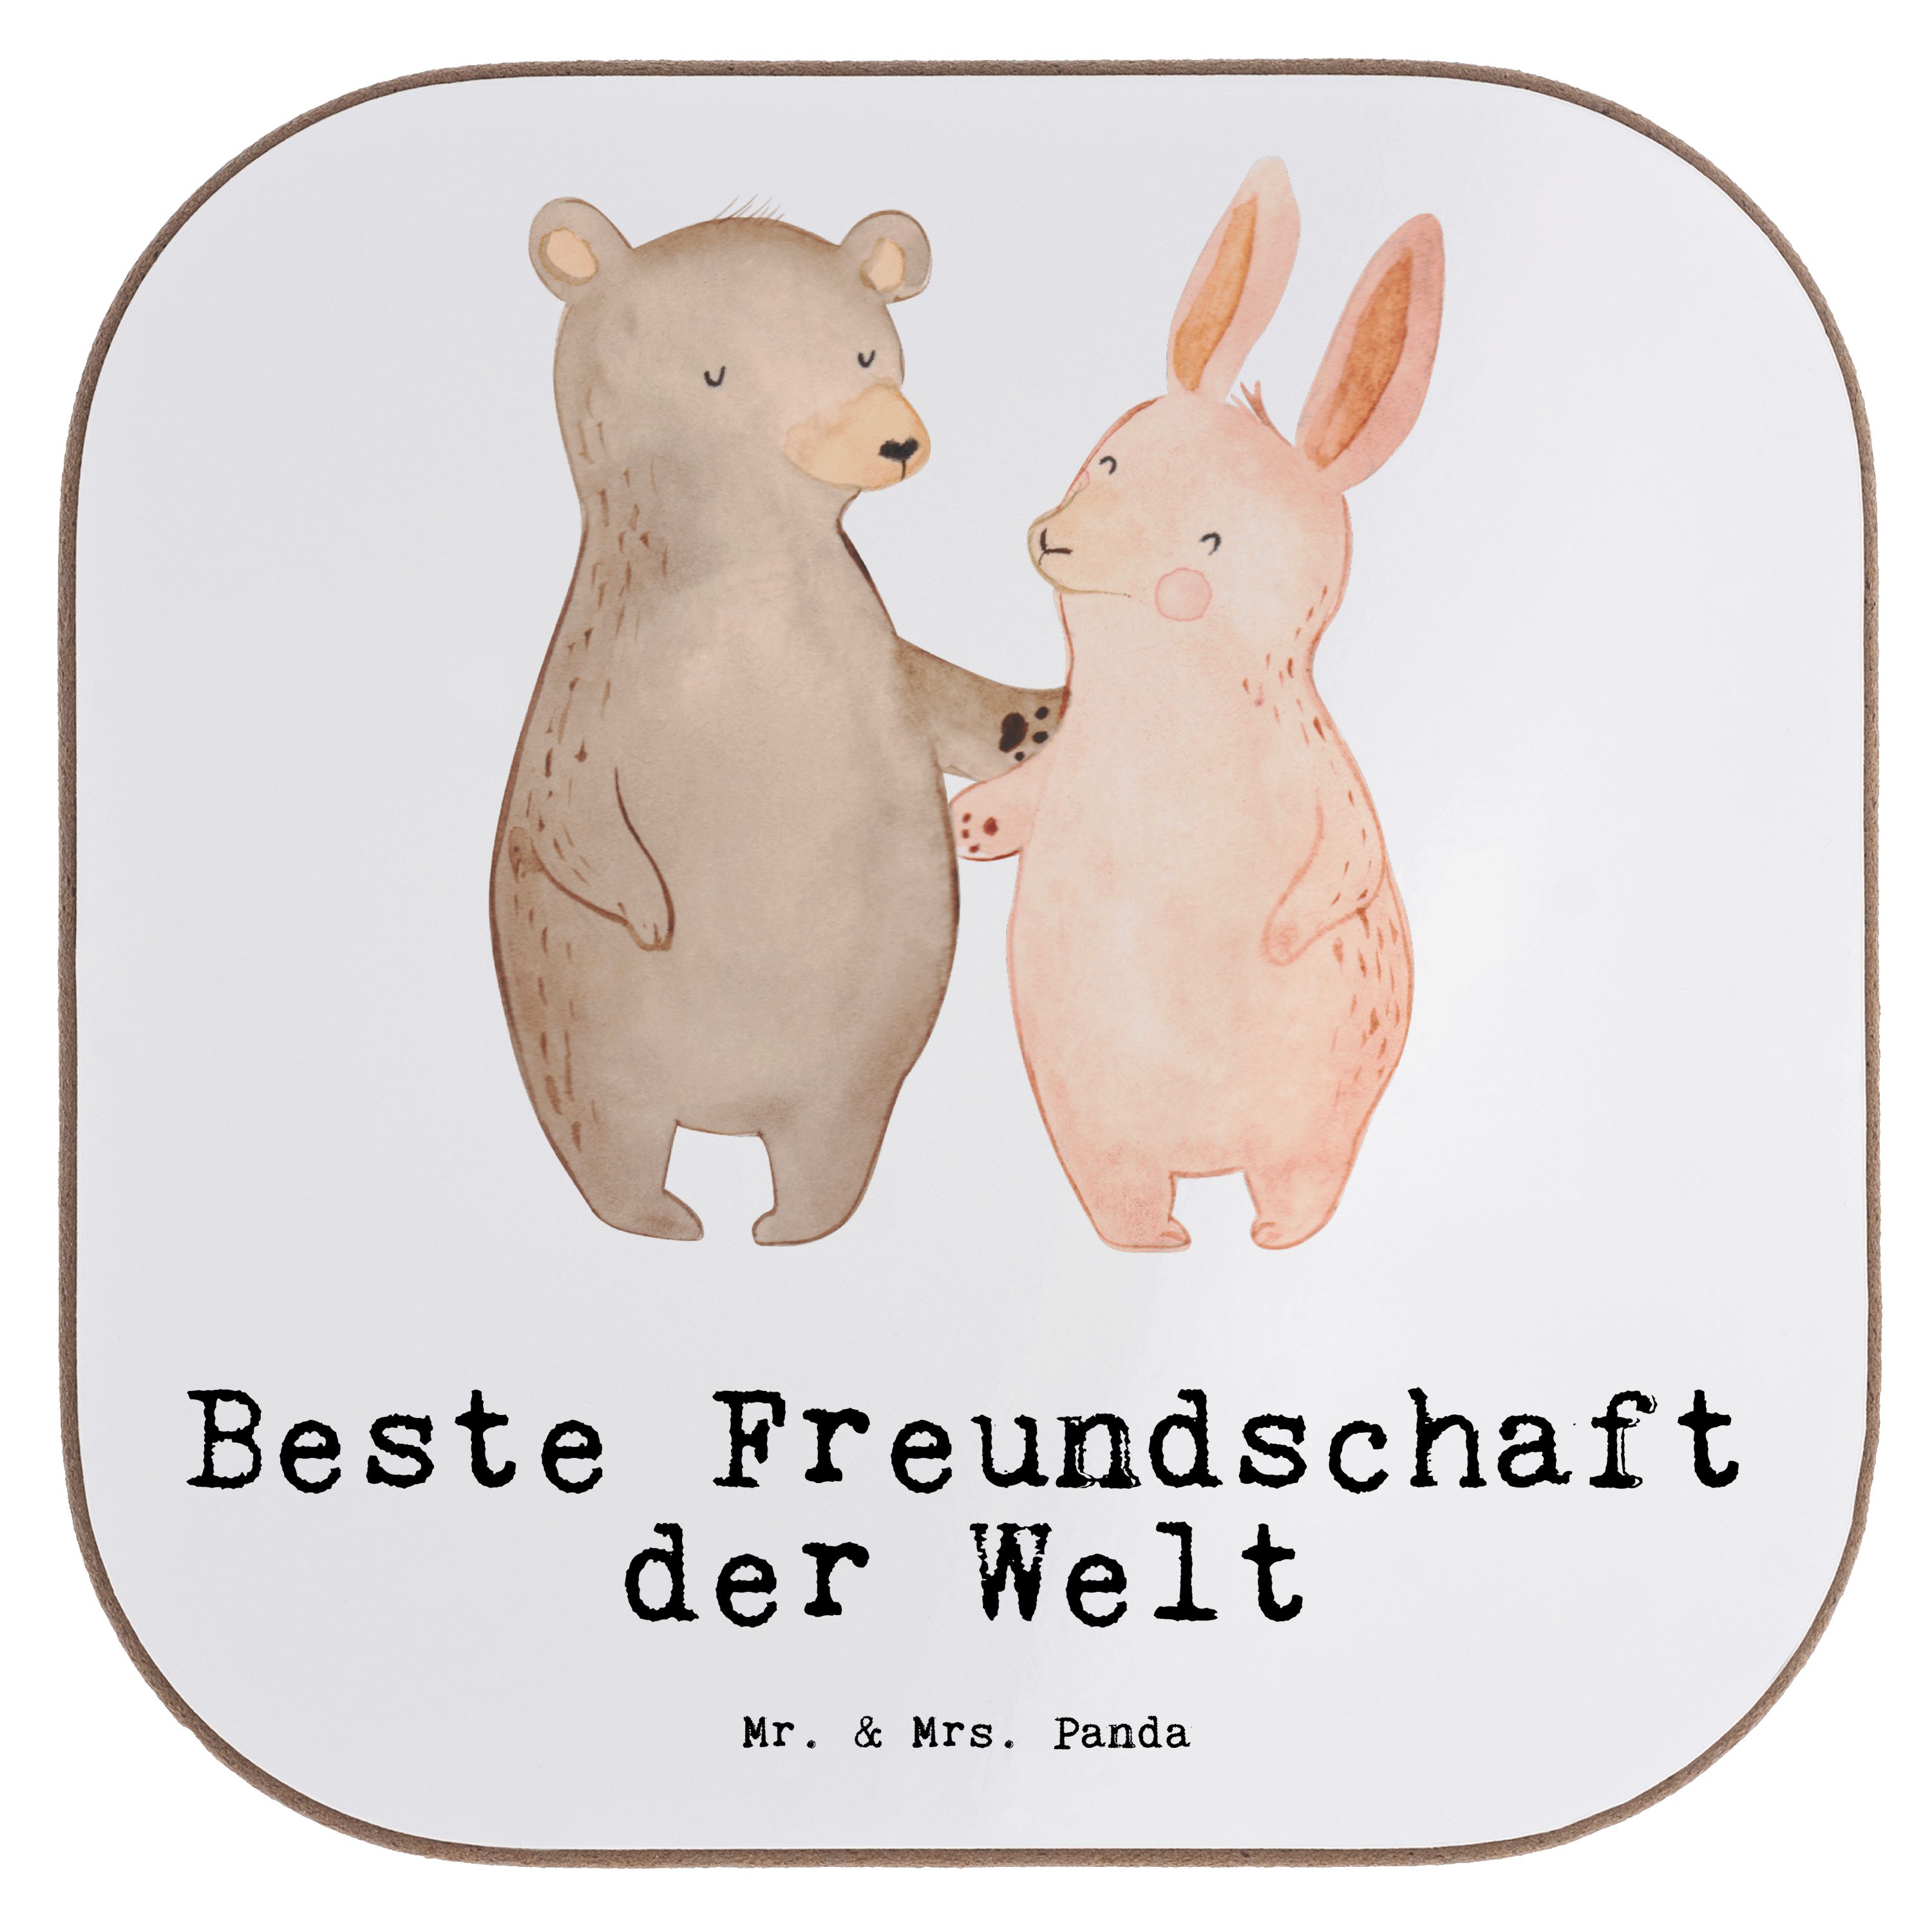 Mr. & Mrs. Panda Getränkeuntersetzer Hase Beste Freundschaft der Welt - Weiß - Geschenk, Untersetzer Gläse, 1-tlg.